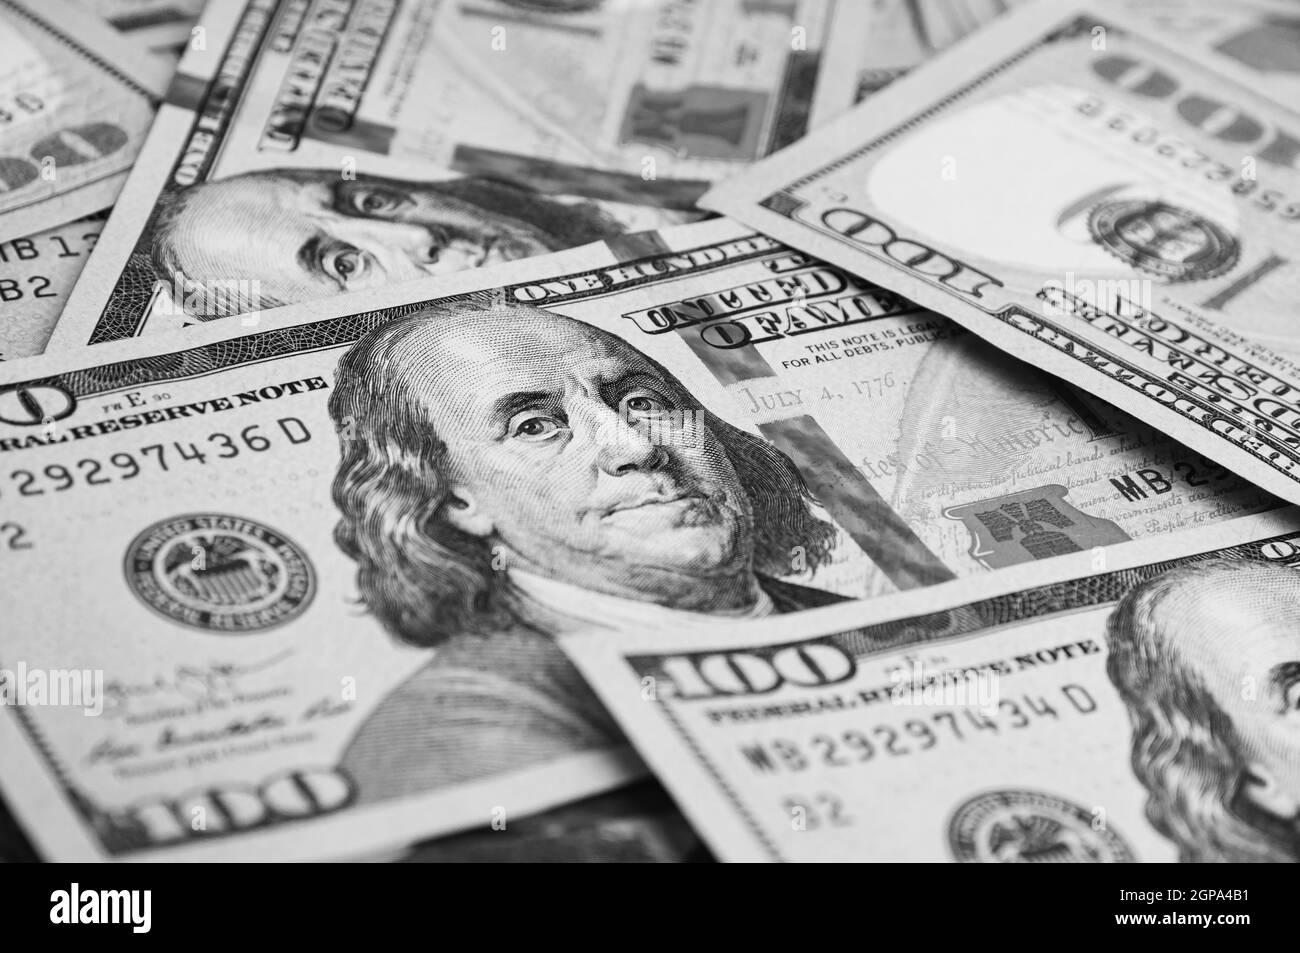 Une centaine de billets américains sont éparpillés. Billets de cent dollars en espèces, image de fond en dollars. Banque D'Images